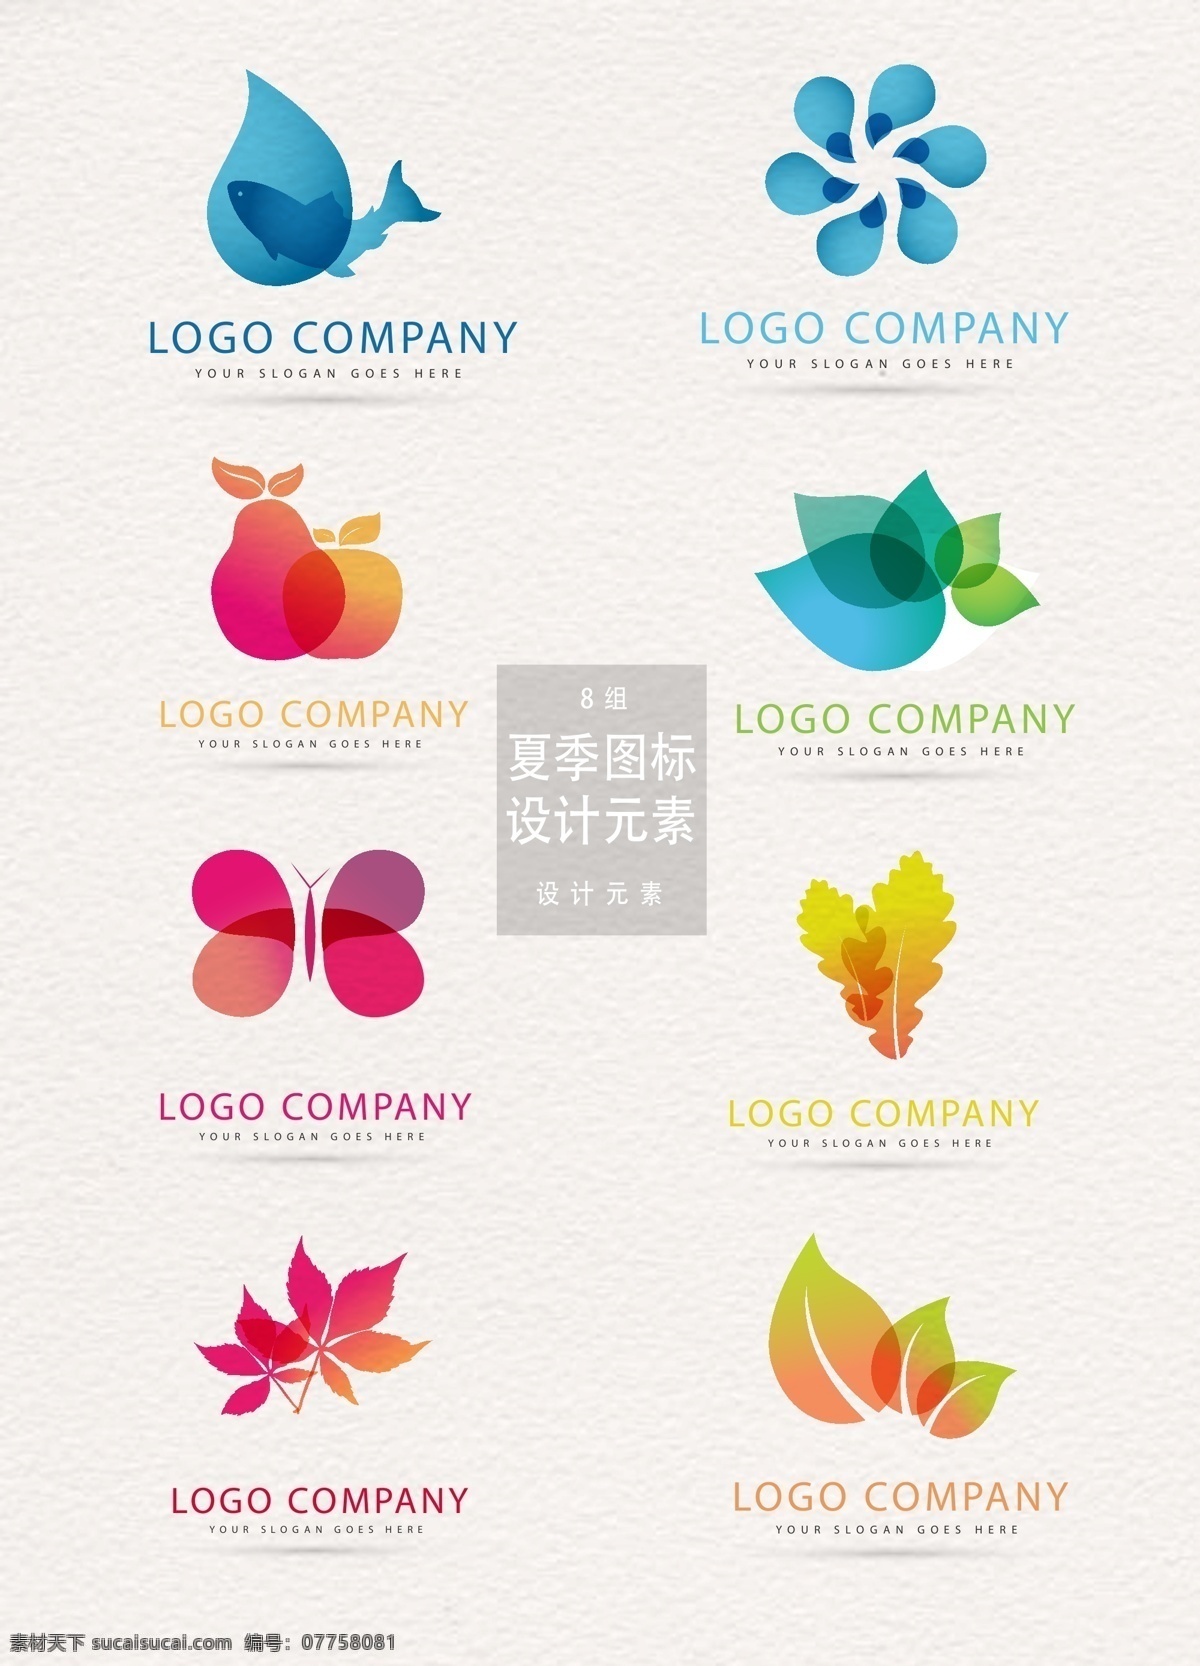 渐变 夏季 元素 图标 logo logo设计 叶子 枫叶 蝴蝶 夏季元素 渐变图标 企业标志